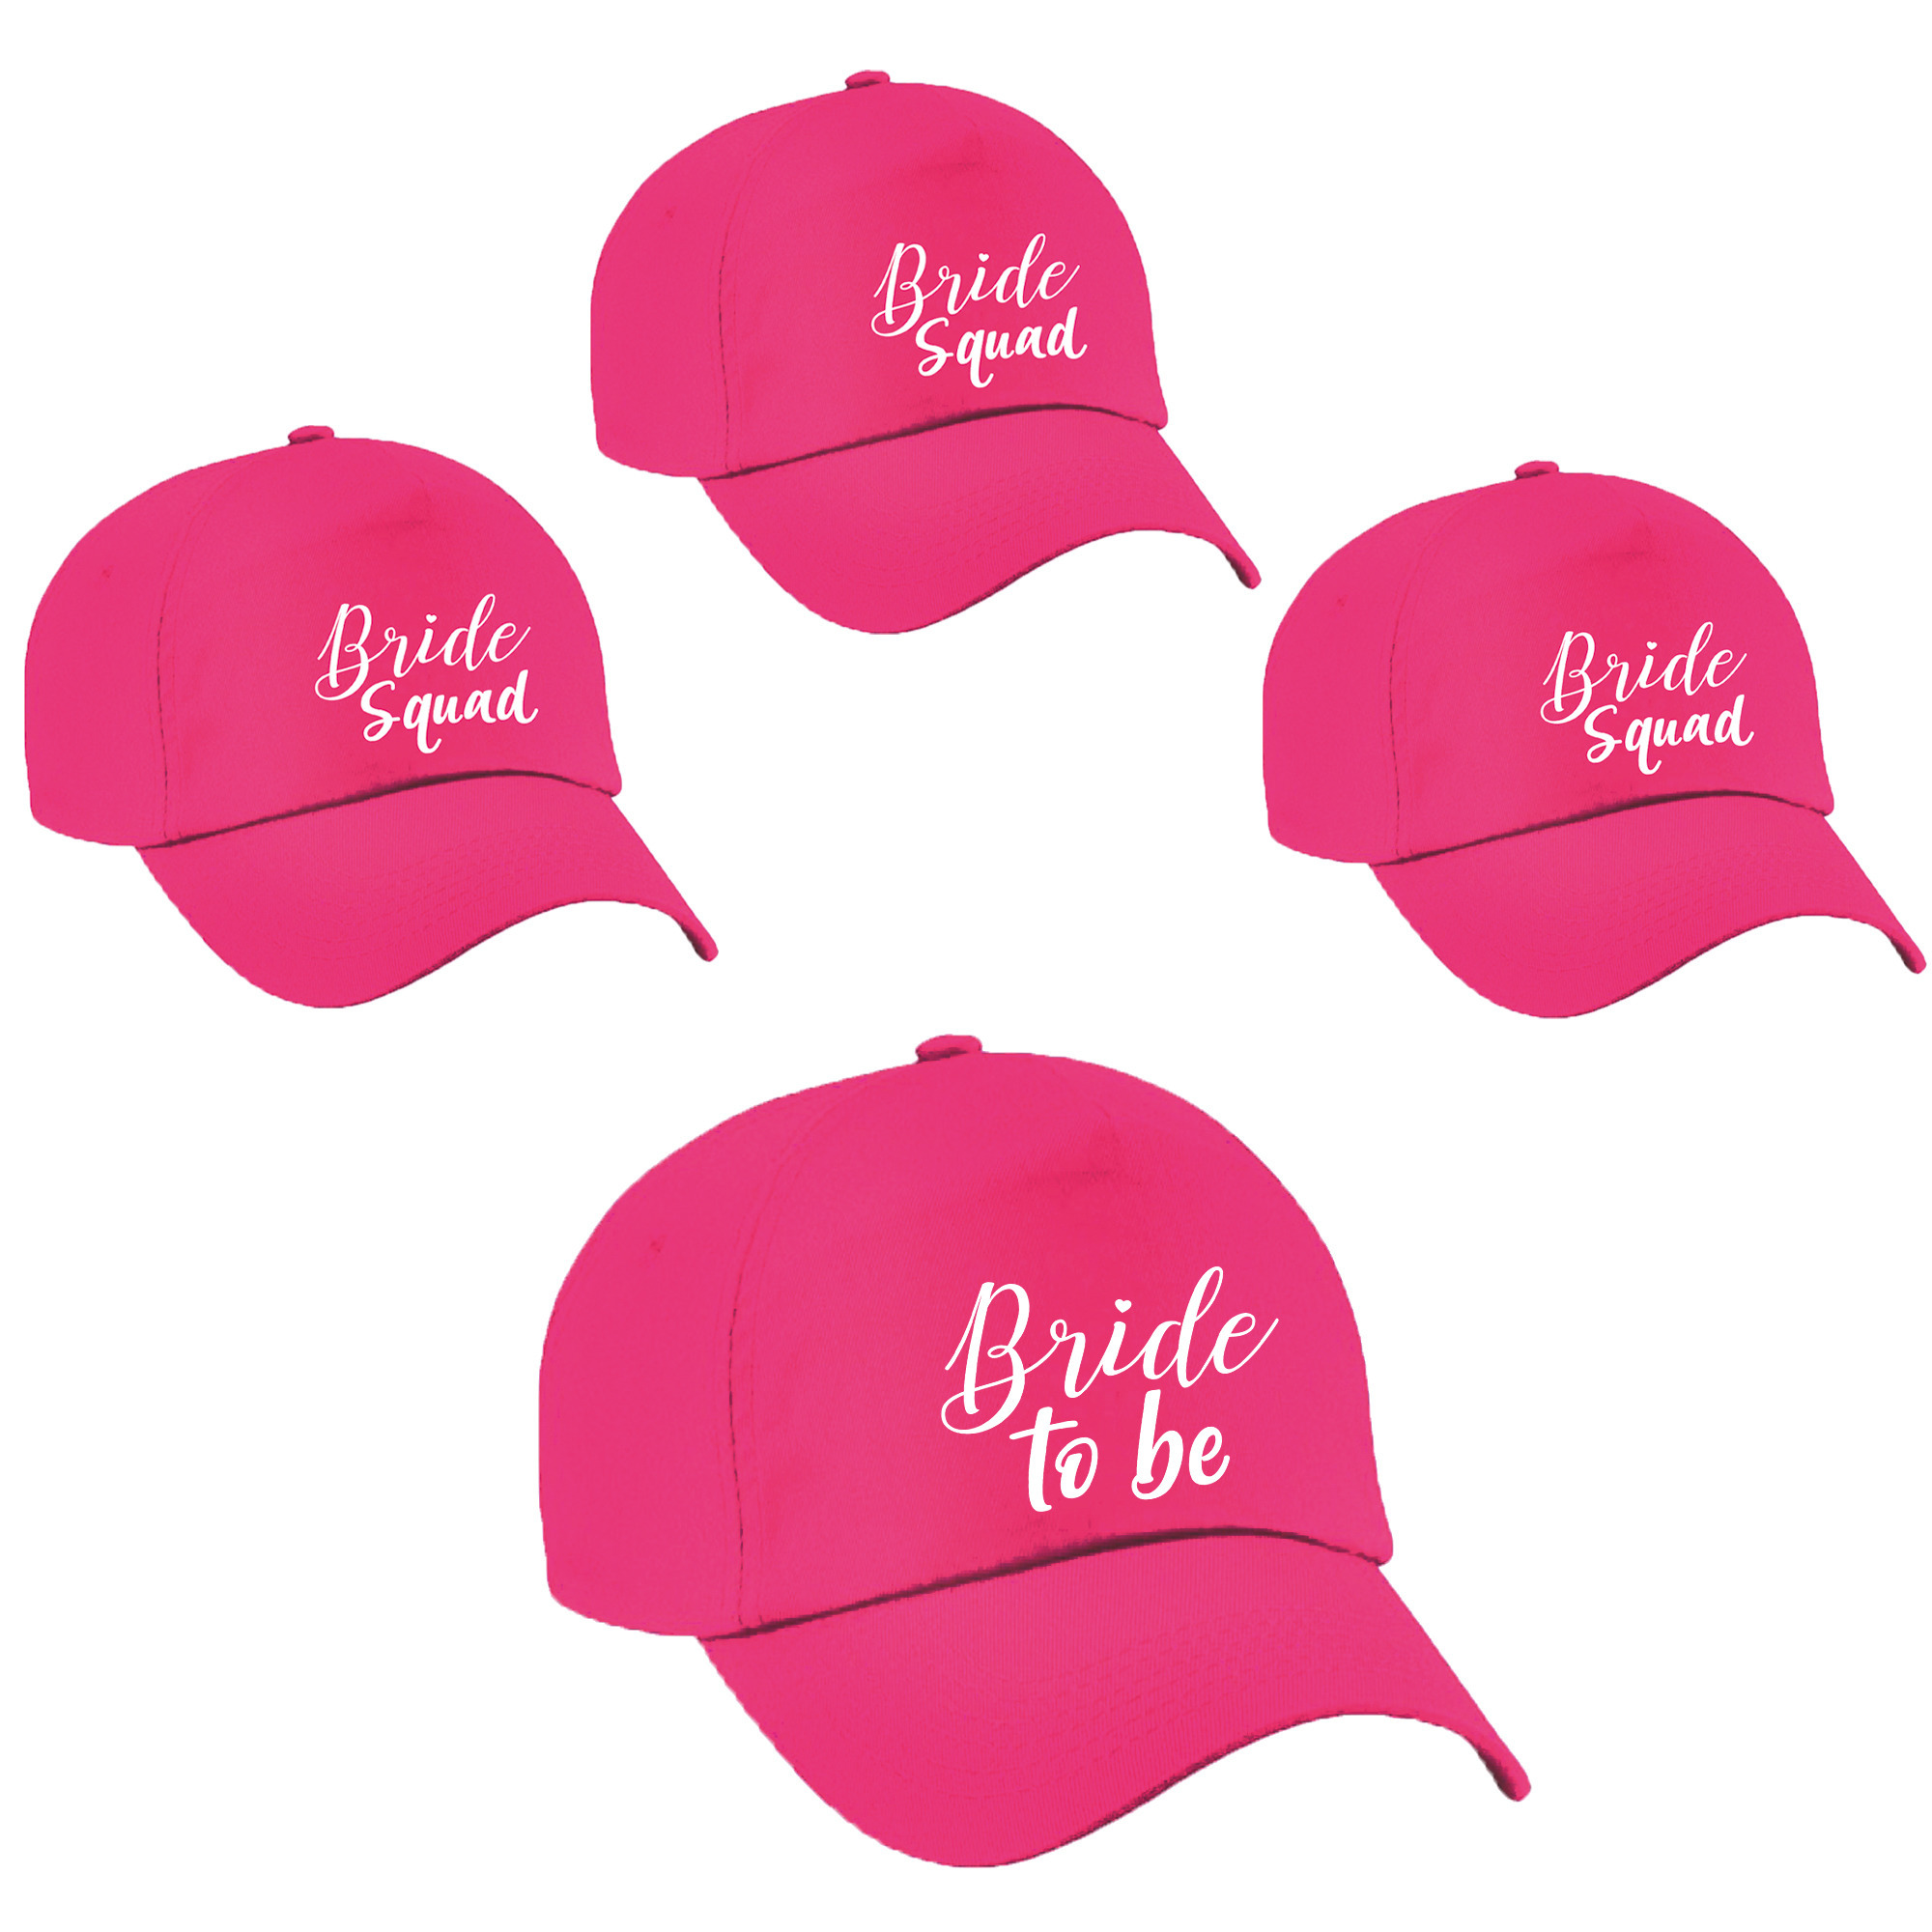 Vrijgezellenfeest dames petjes pakket sierlijk - 1x Bride to Be roze + 7x Bride Squad roze